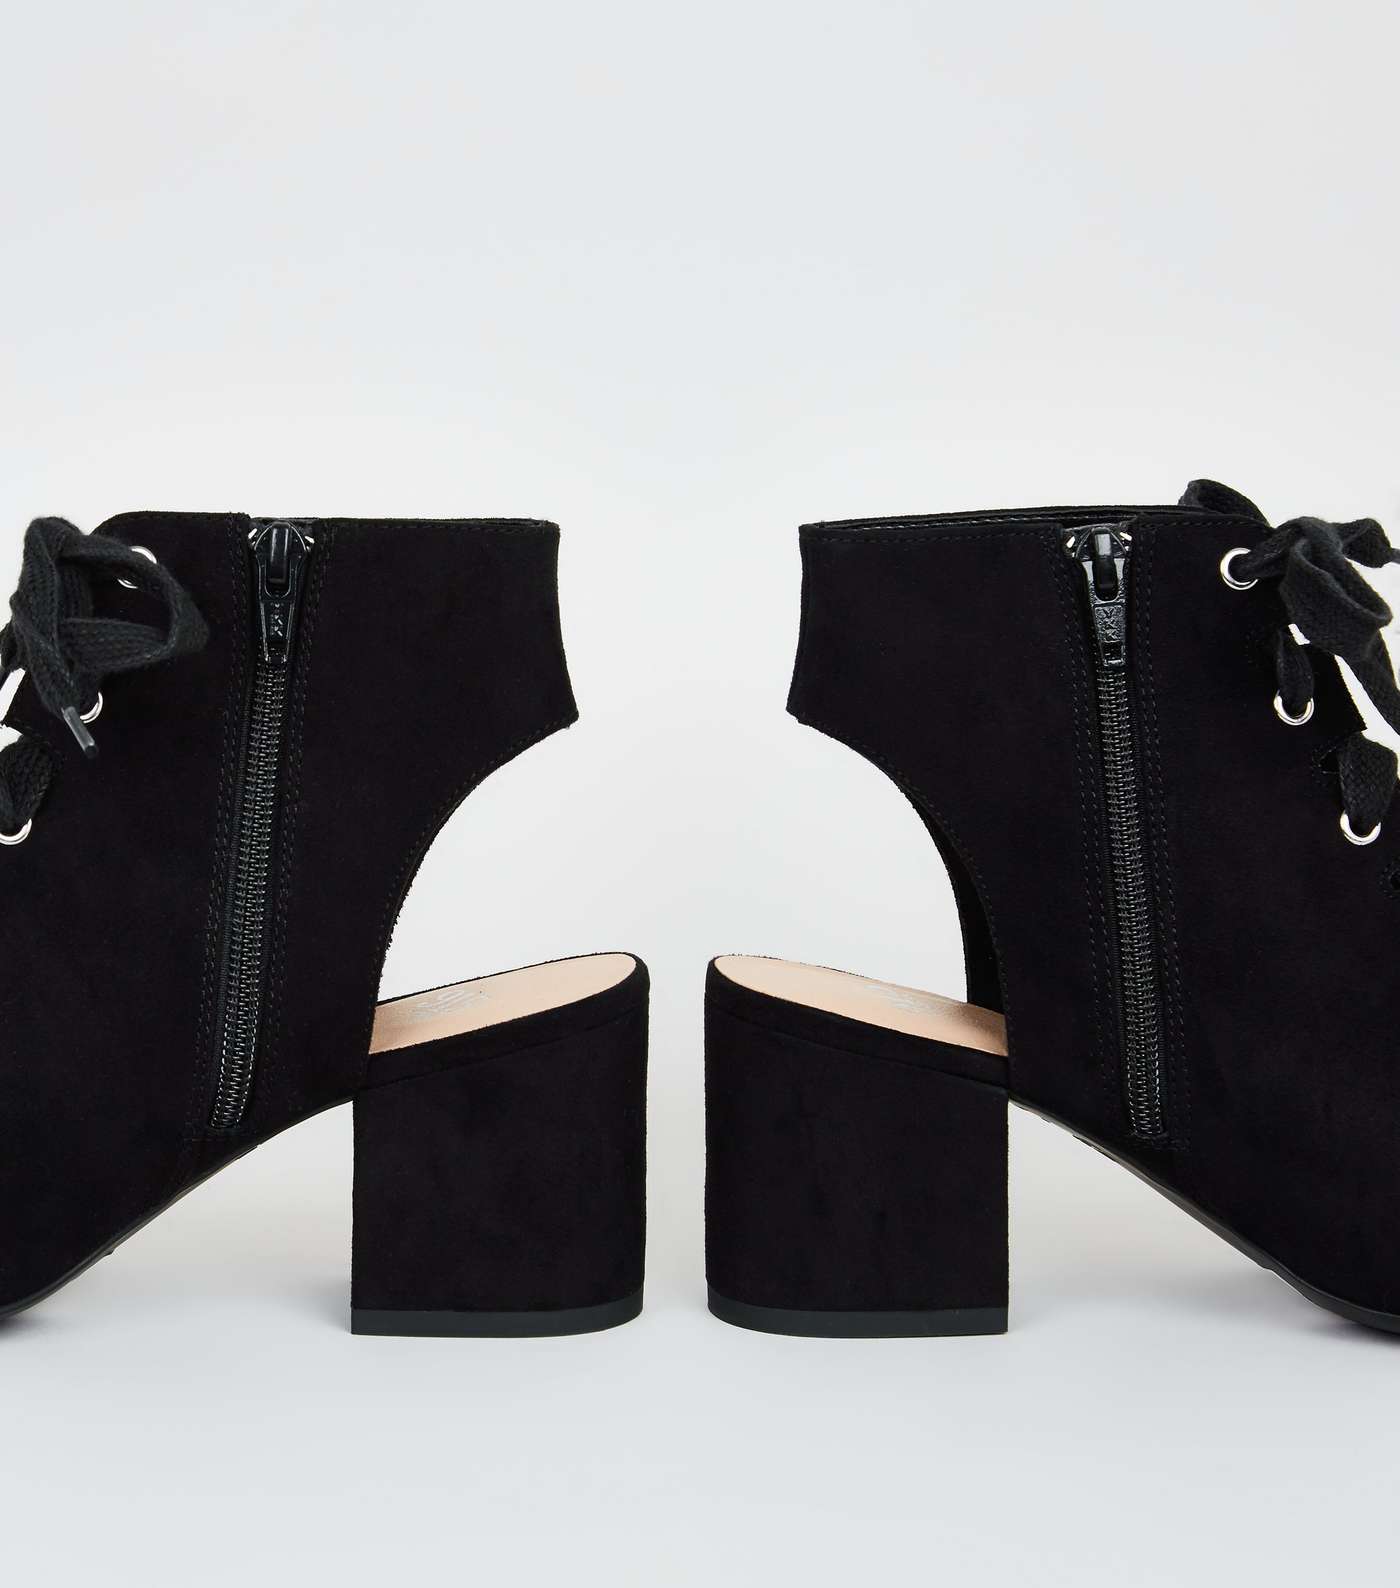 Girls Black Lace Up Peep Toe Shoe Boots Image 4